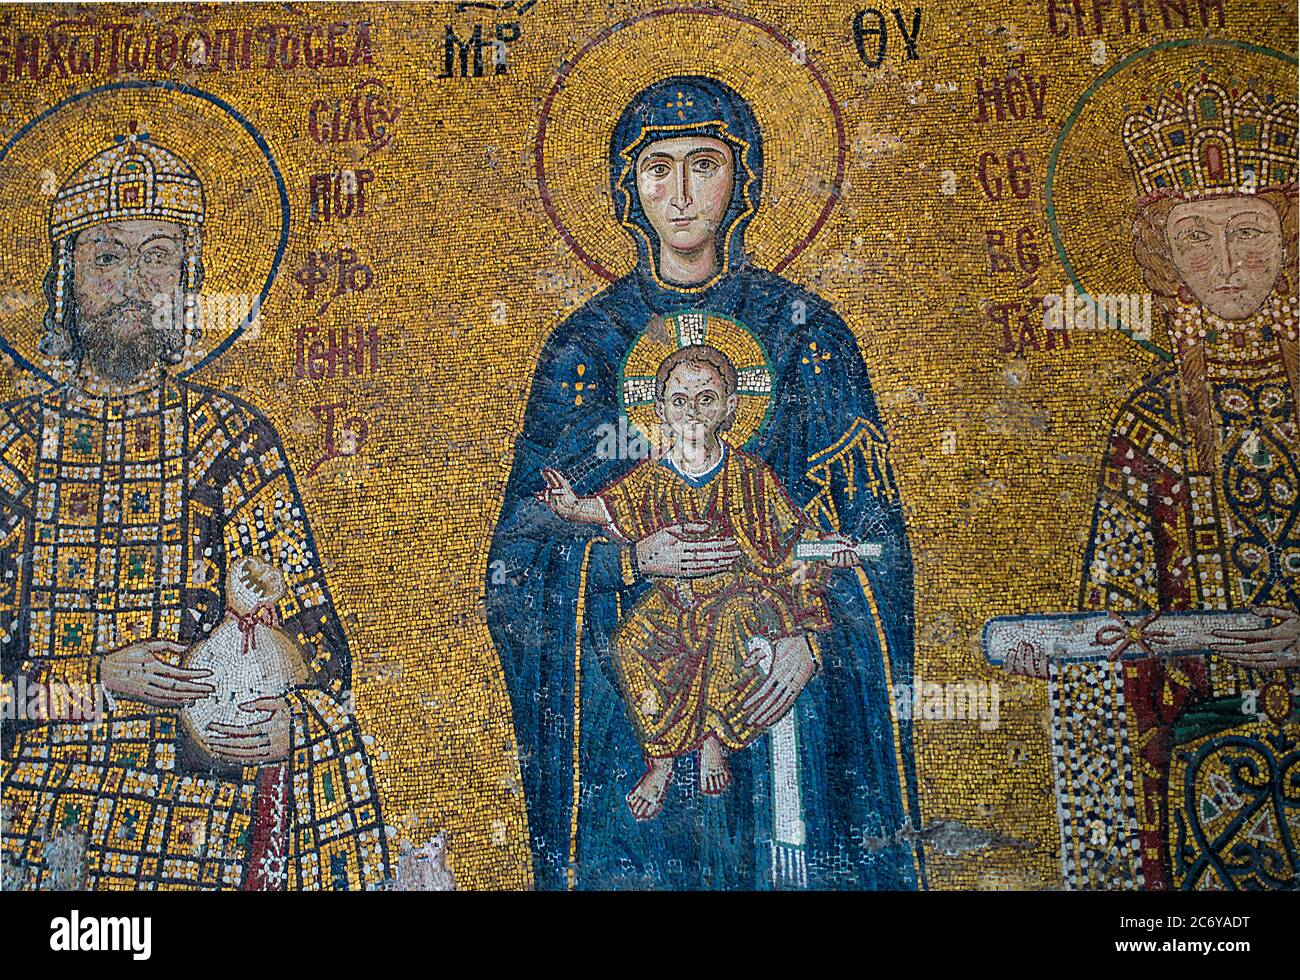 Madonna e bambino Gesù bizantino cristiano mosaico Hagia Sophia, Istanbul, Turchia Foto Stock